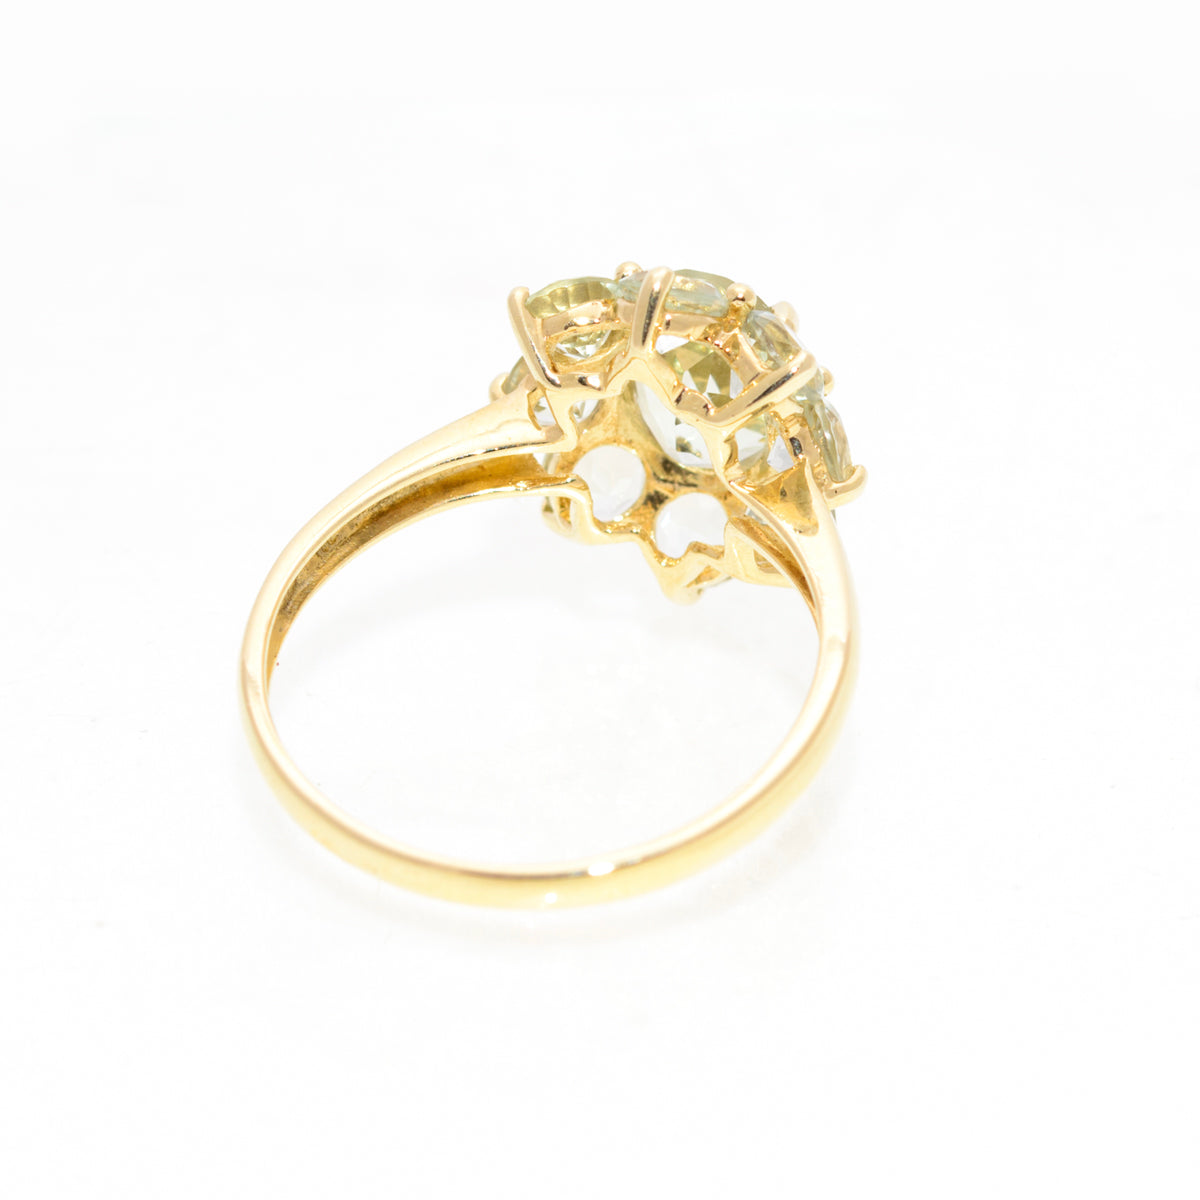 9ct Gold & Green Prasiolite Cluster Ring 1.3 Carat Gemstone UK Size T  (A1438)